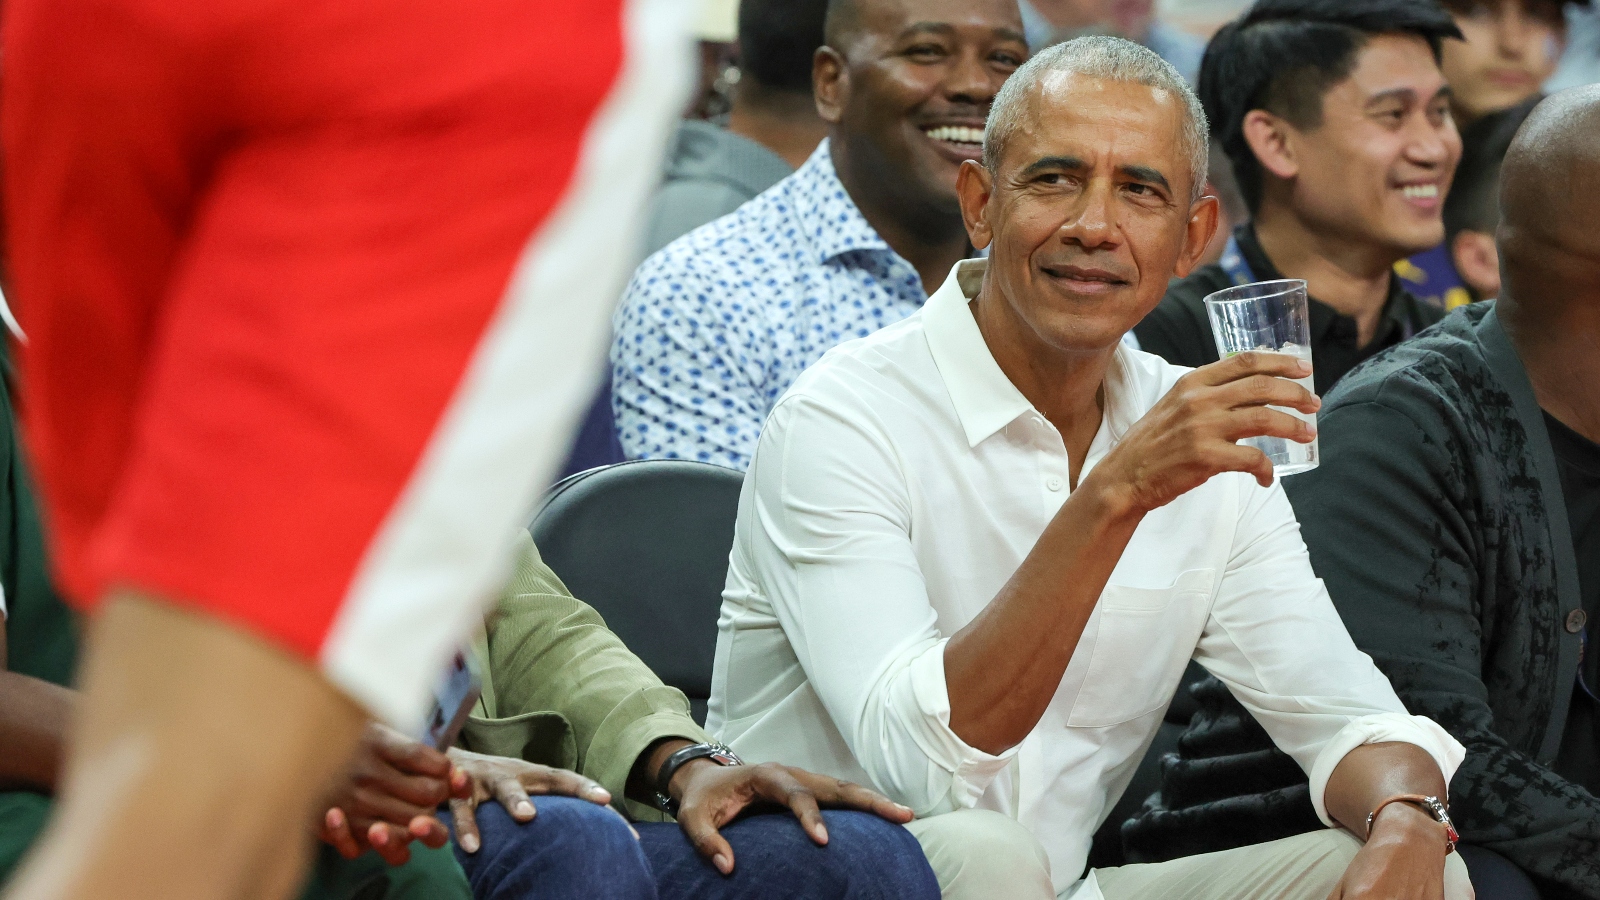 President Barack Obama attending Team USA Basketball game